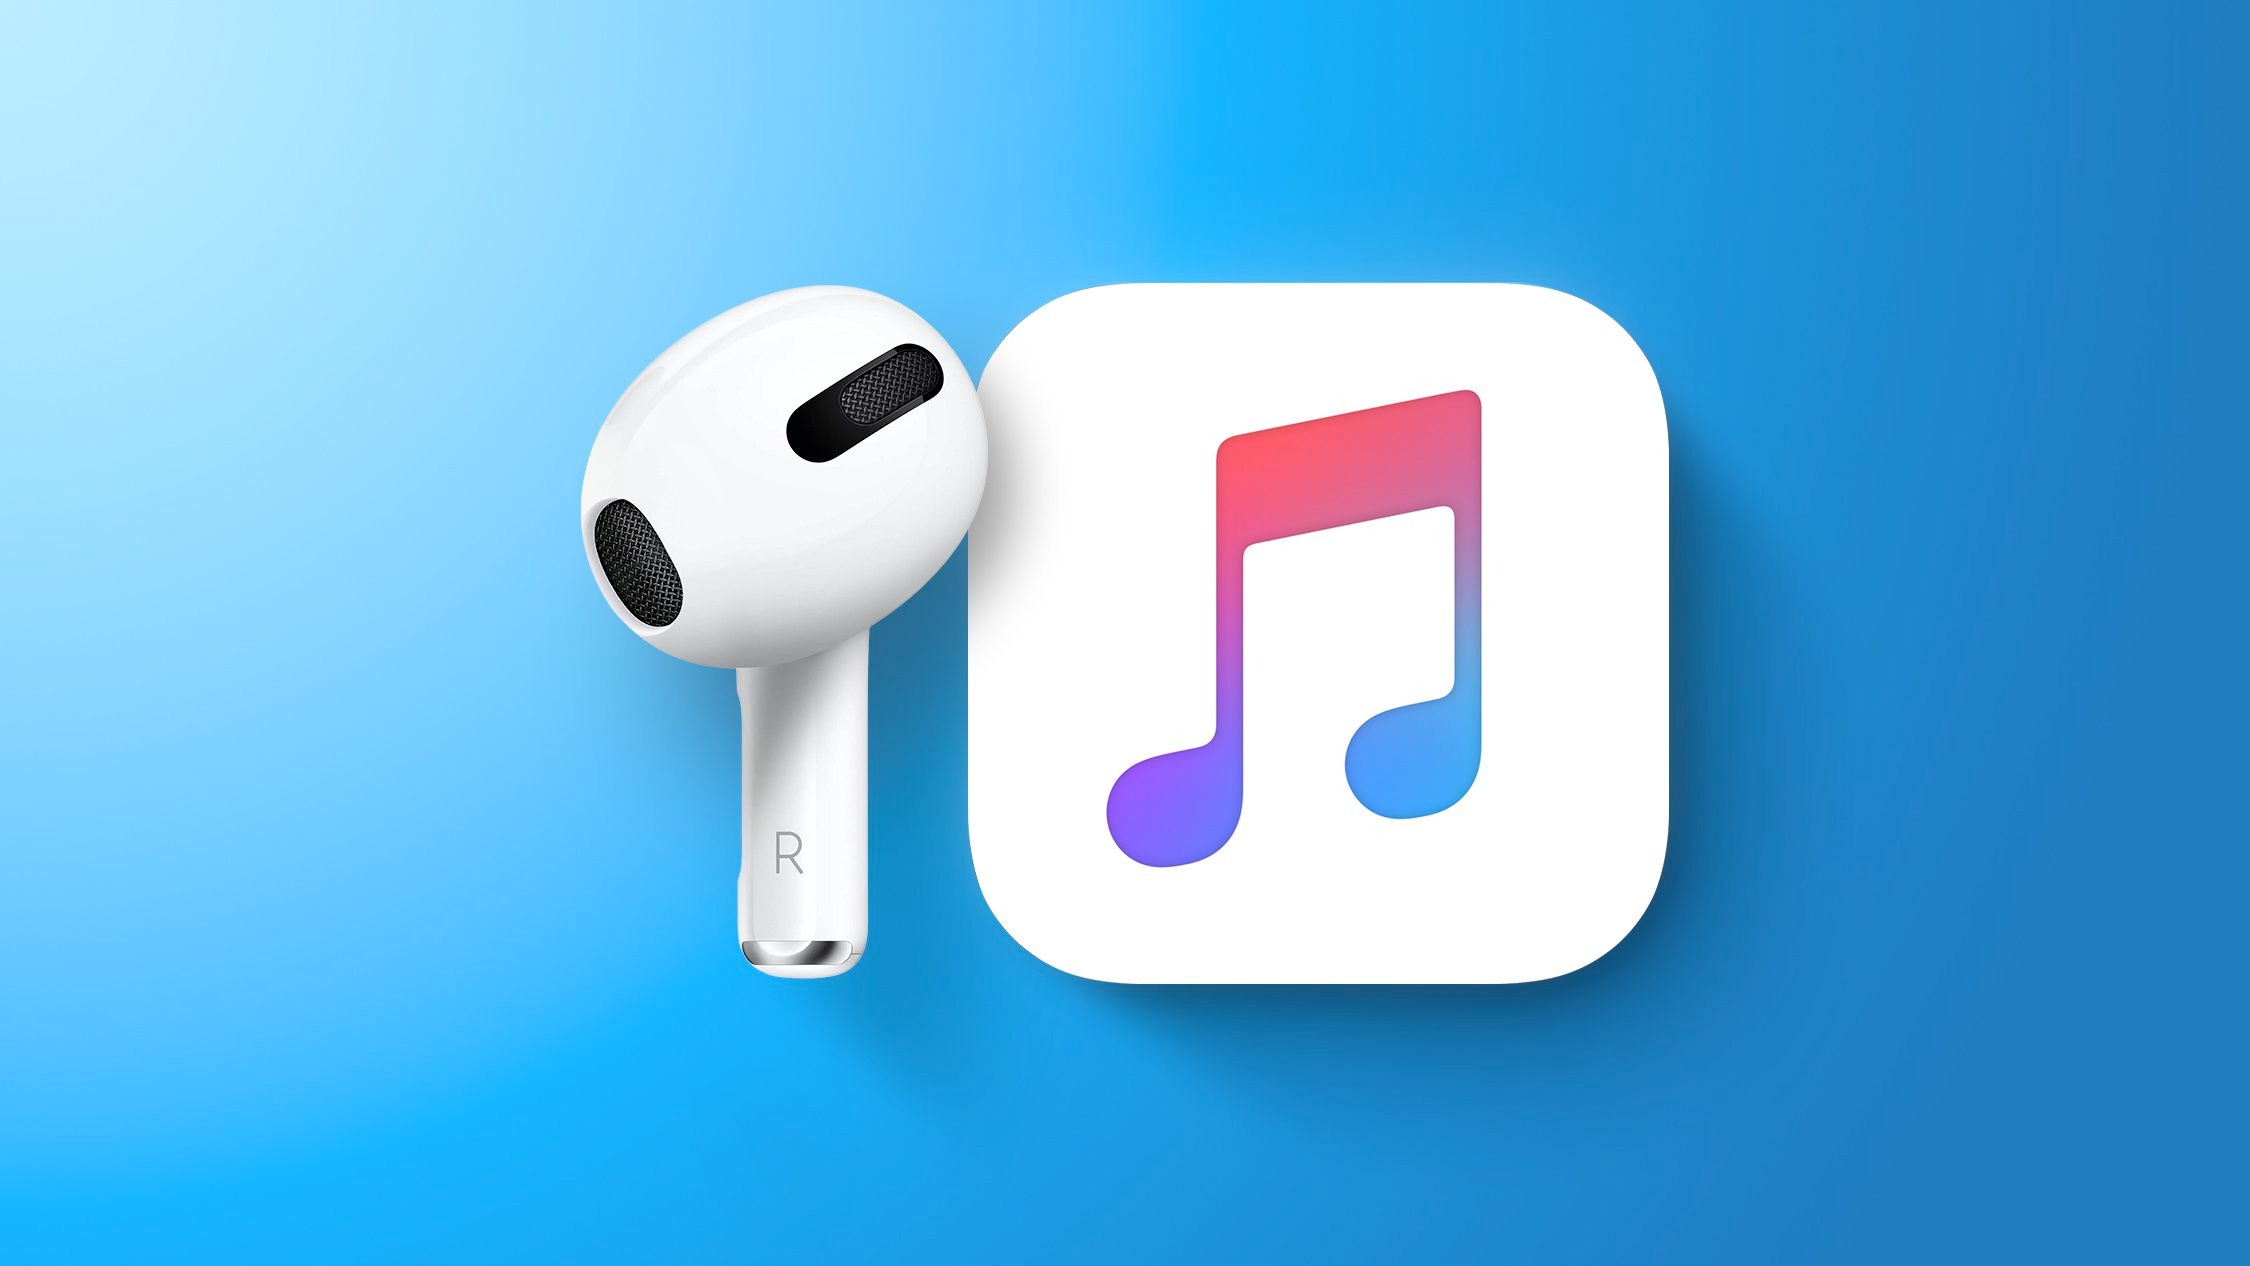 Apple bắt đầu hé lộ về tính năng Apple Music mới qua teaser "Âm nhạc sắp sửa thay đổi"